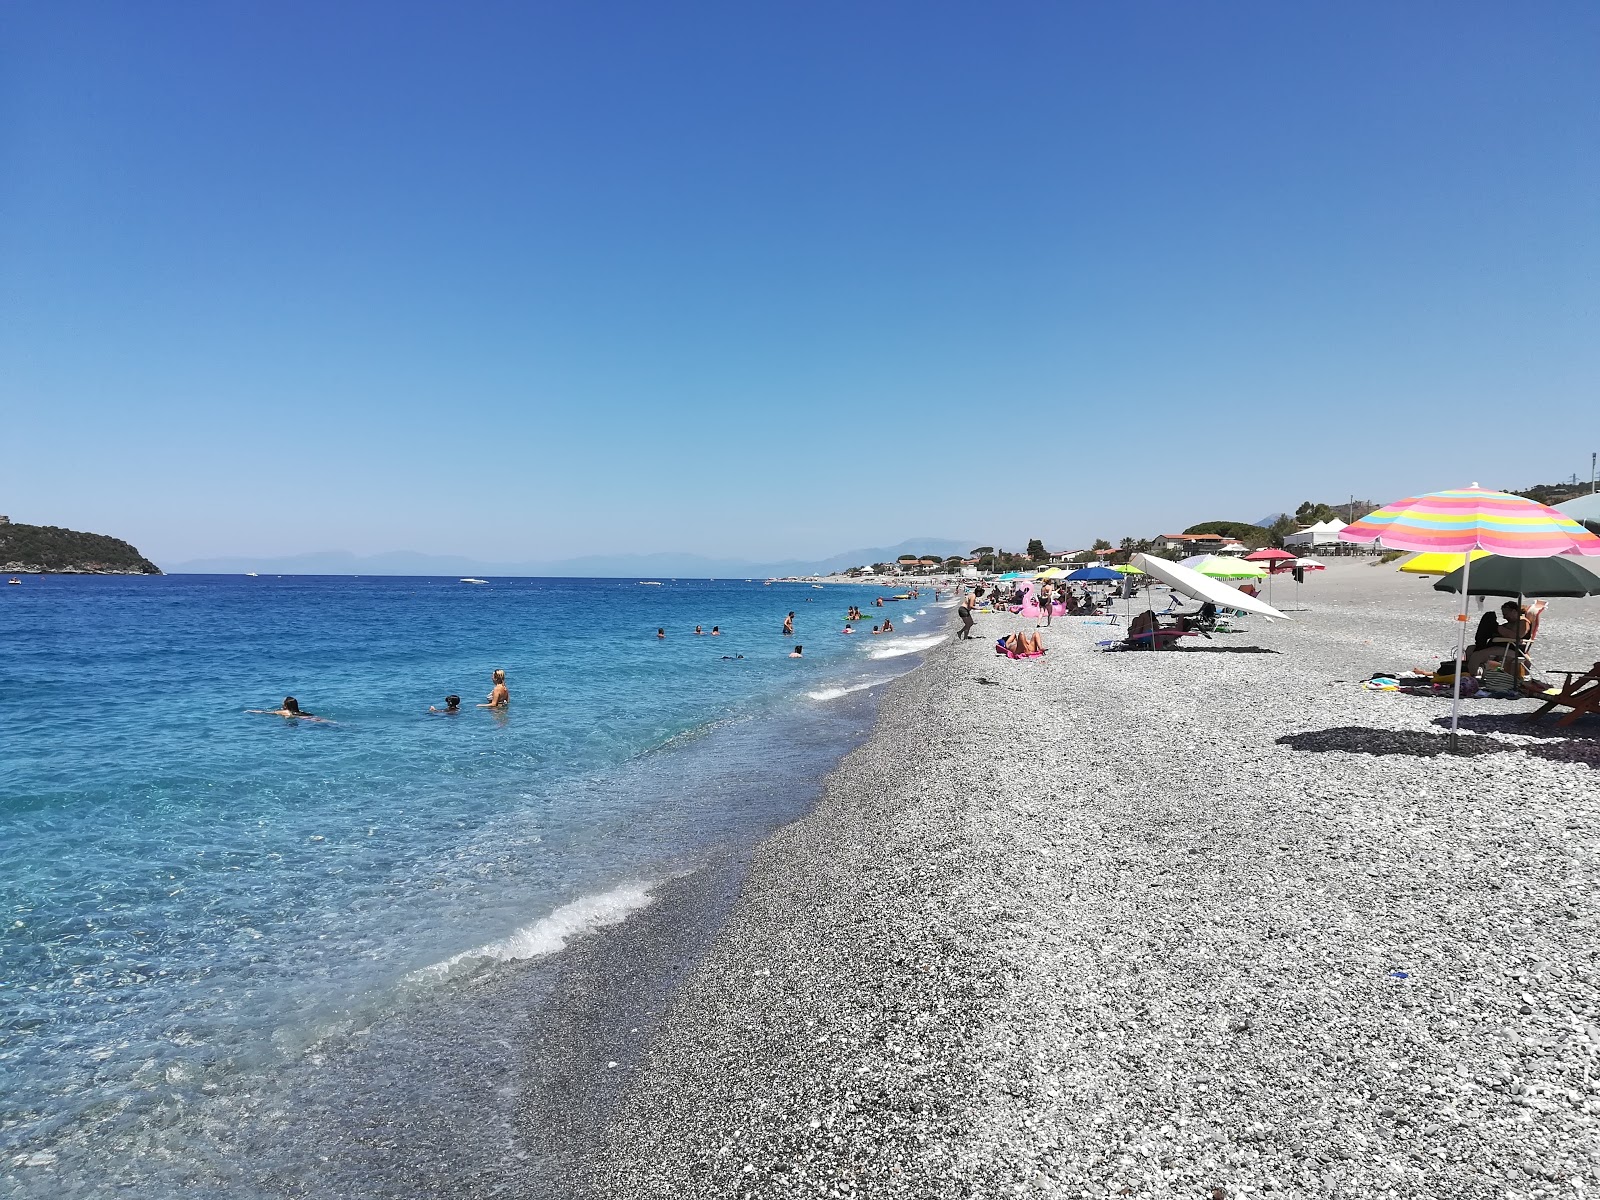 Cirella beach'in fotoğrafı gri ince çakıl taş yüzey ile